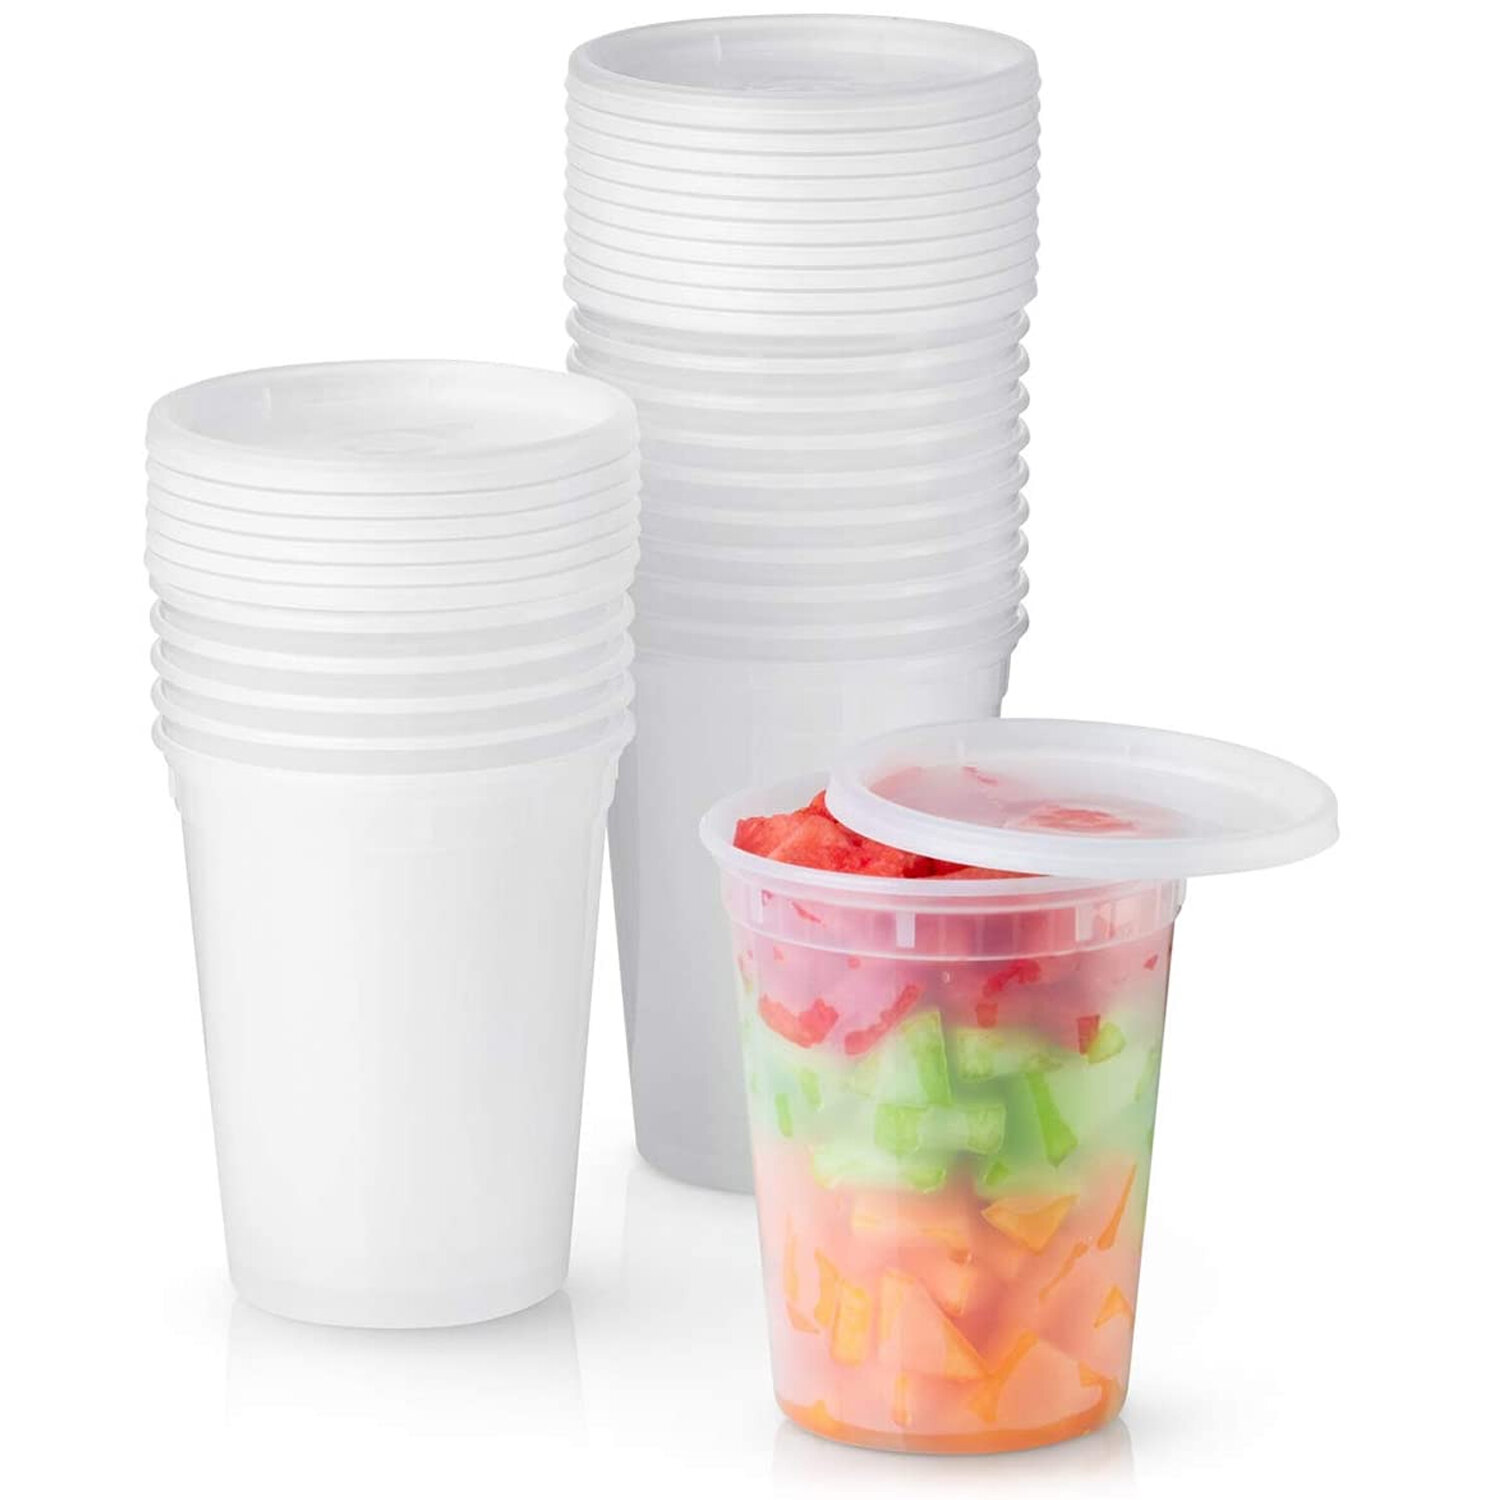 Prep & Savour 32 Oz Reusable Plastic Deli Containers & Reviews